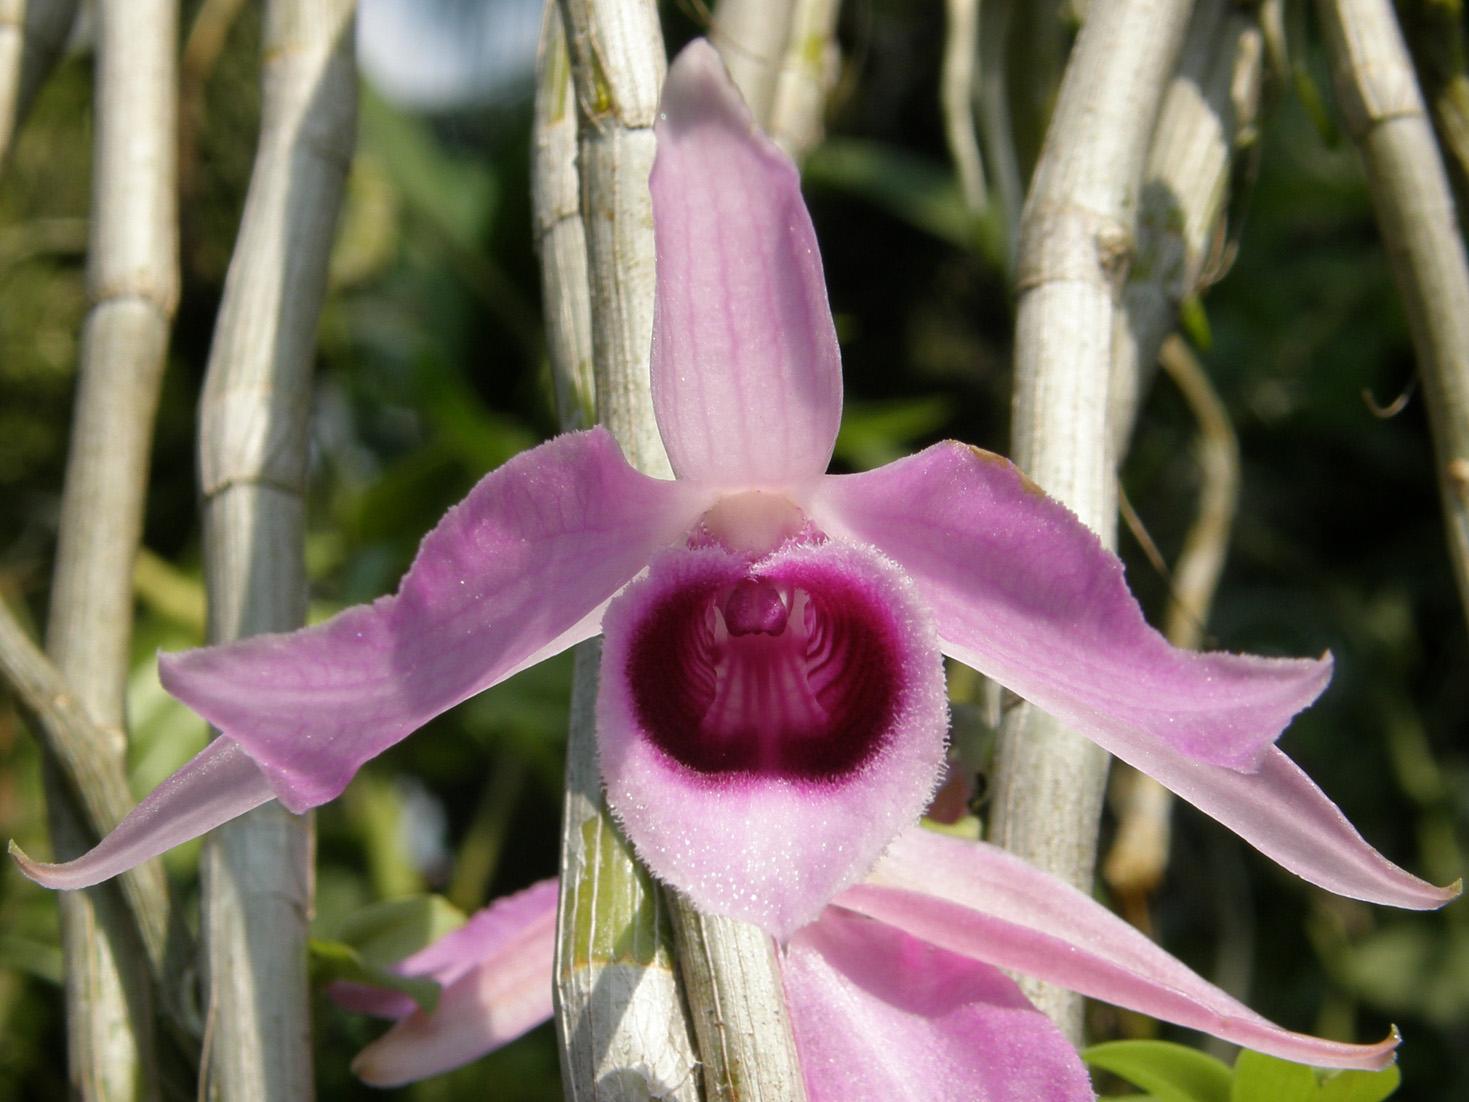 http://images4.wikia.nocookie.net/__cb20081214205009/orchids/en/images/d/d5/Dendrobium_anosmum_1a.jpg